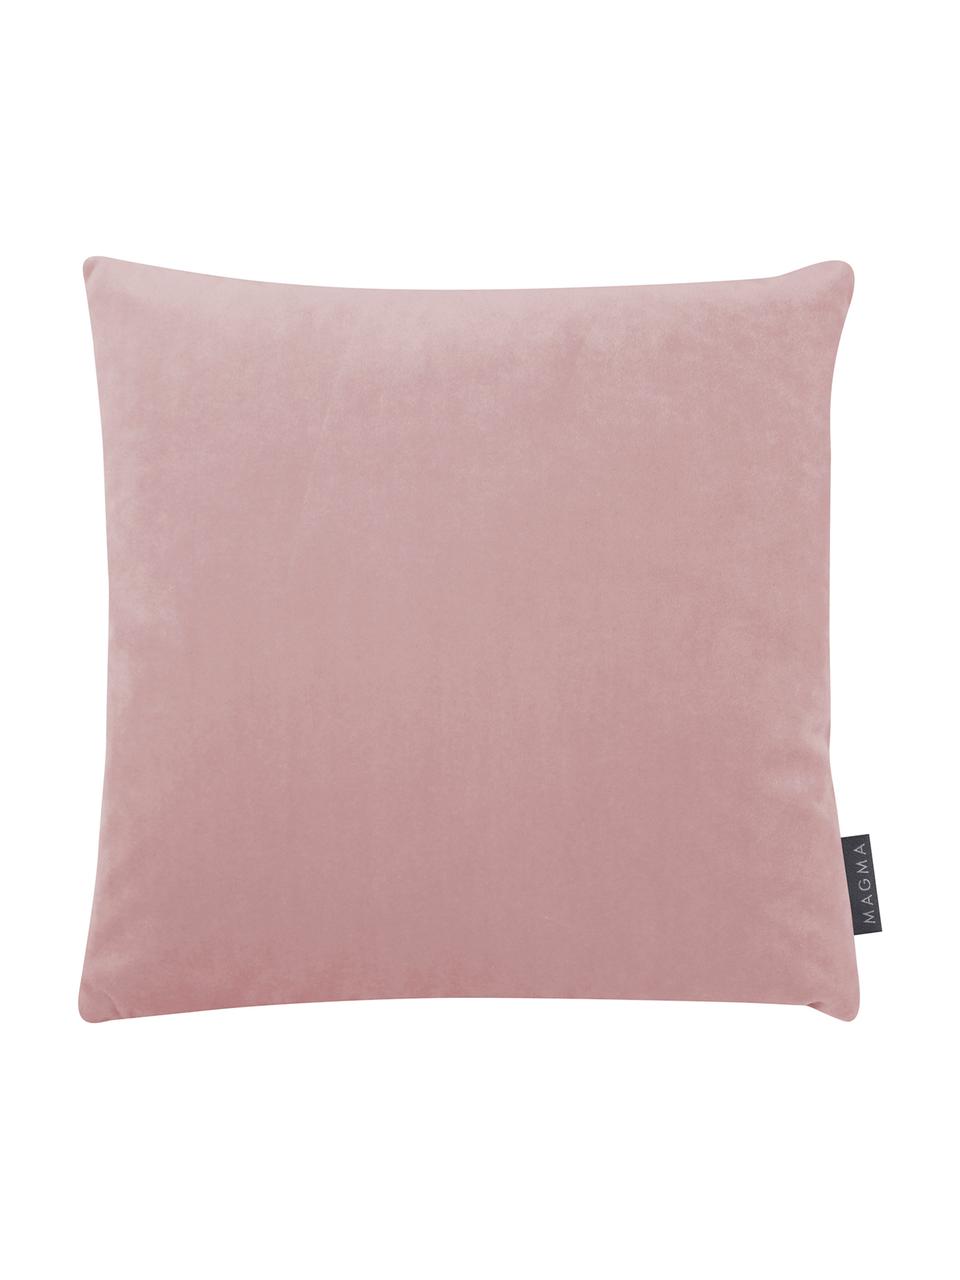 Poszewka na poduszkę z aksamitu Nobless, 100% aksamit poliestrowy, Brudny różowy, S 40 x D 40 cm